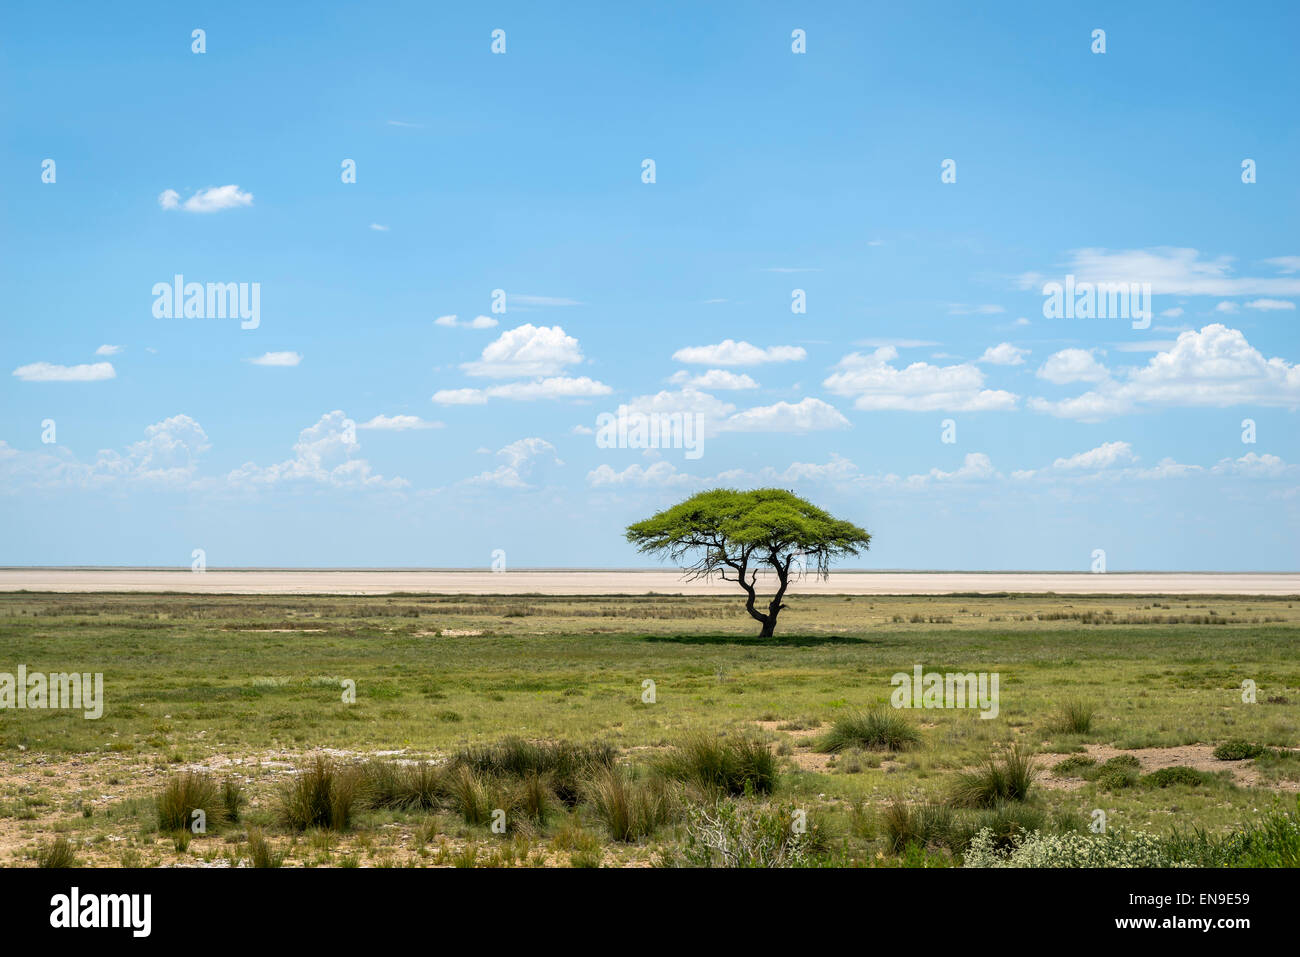 Acacia tree, Etosha National Park, Namibia, Africa Stock Photo